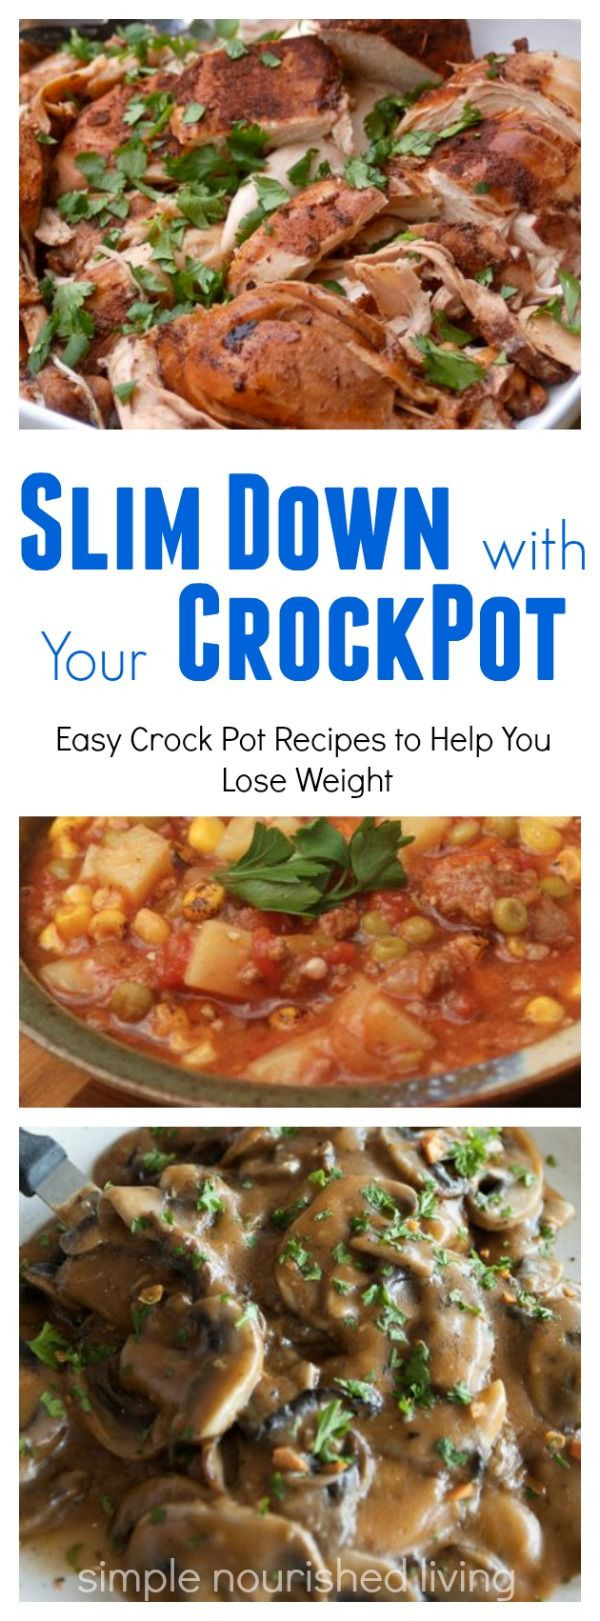 Low Calorie Crock Pot Dinners
 Hundreds of Tried and True Healthy Low Calorie Crock Pot